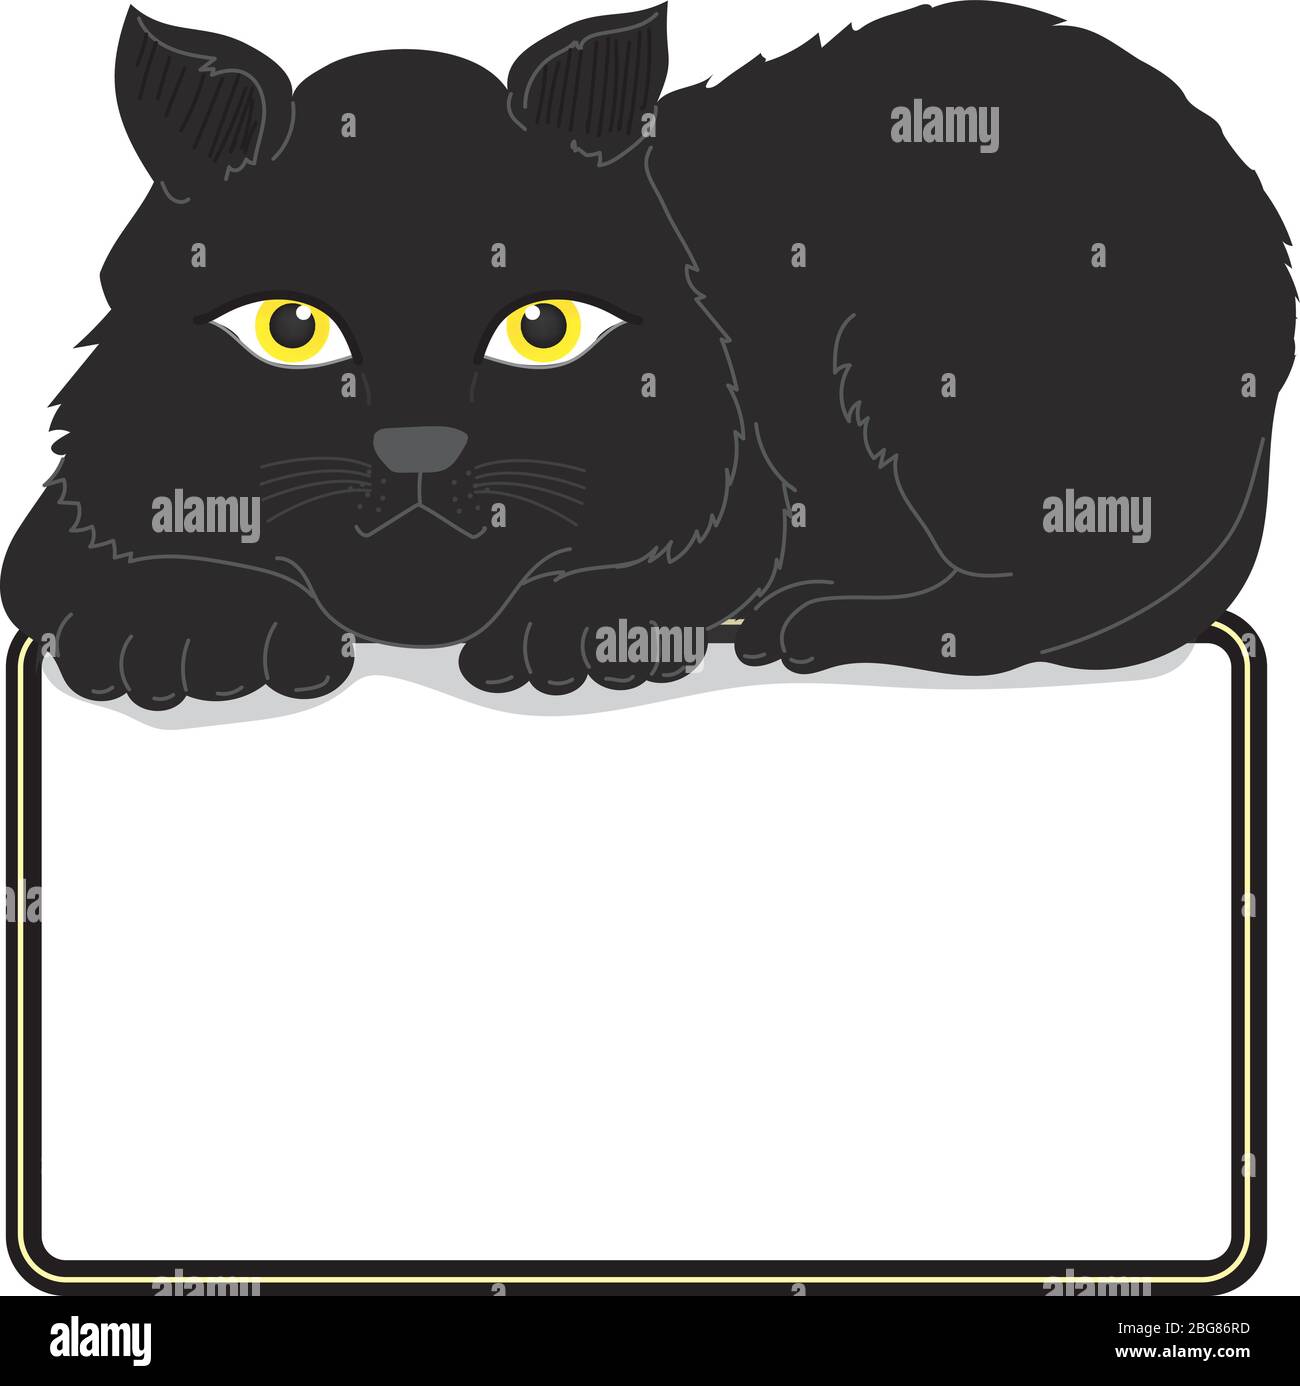 CAT Illustration Clipart. Die große schwarze Katze saß auf dem Rahmen. Es hat komplett schwarzes Fell. Und gelbe Augen. Der Rahmen hat Platz für Text. Hand Stock Vektor